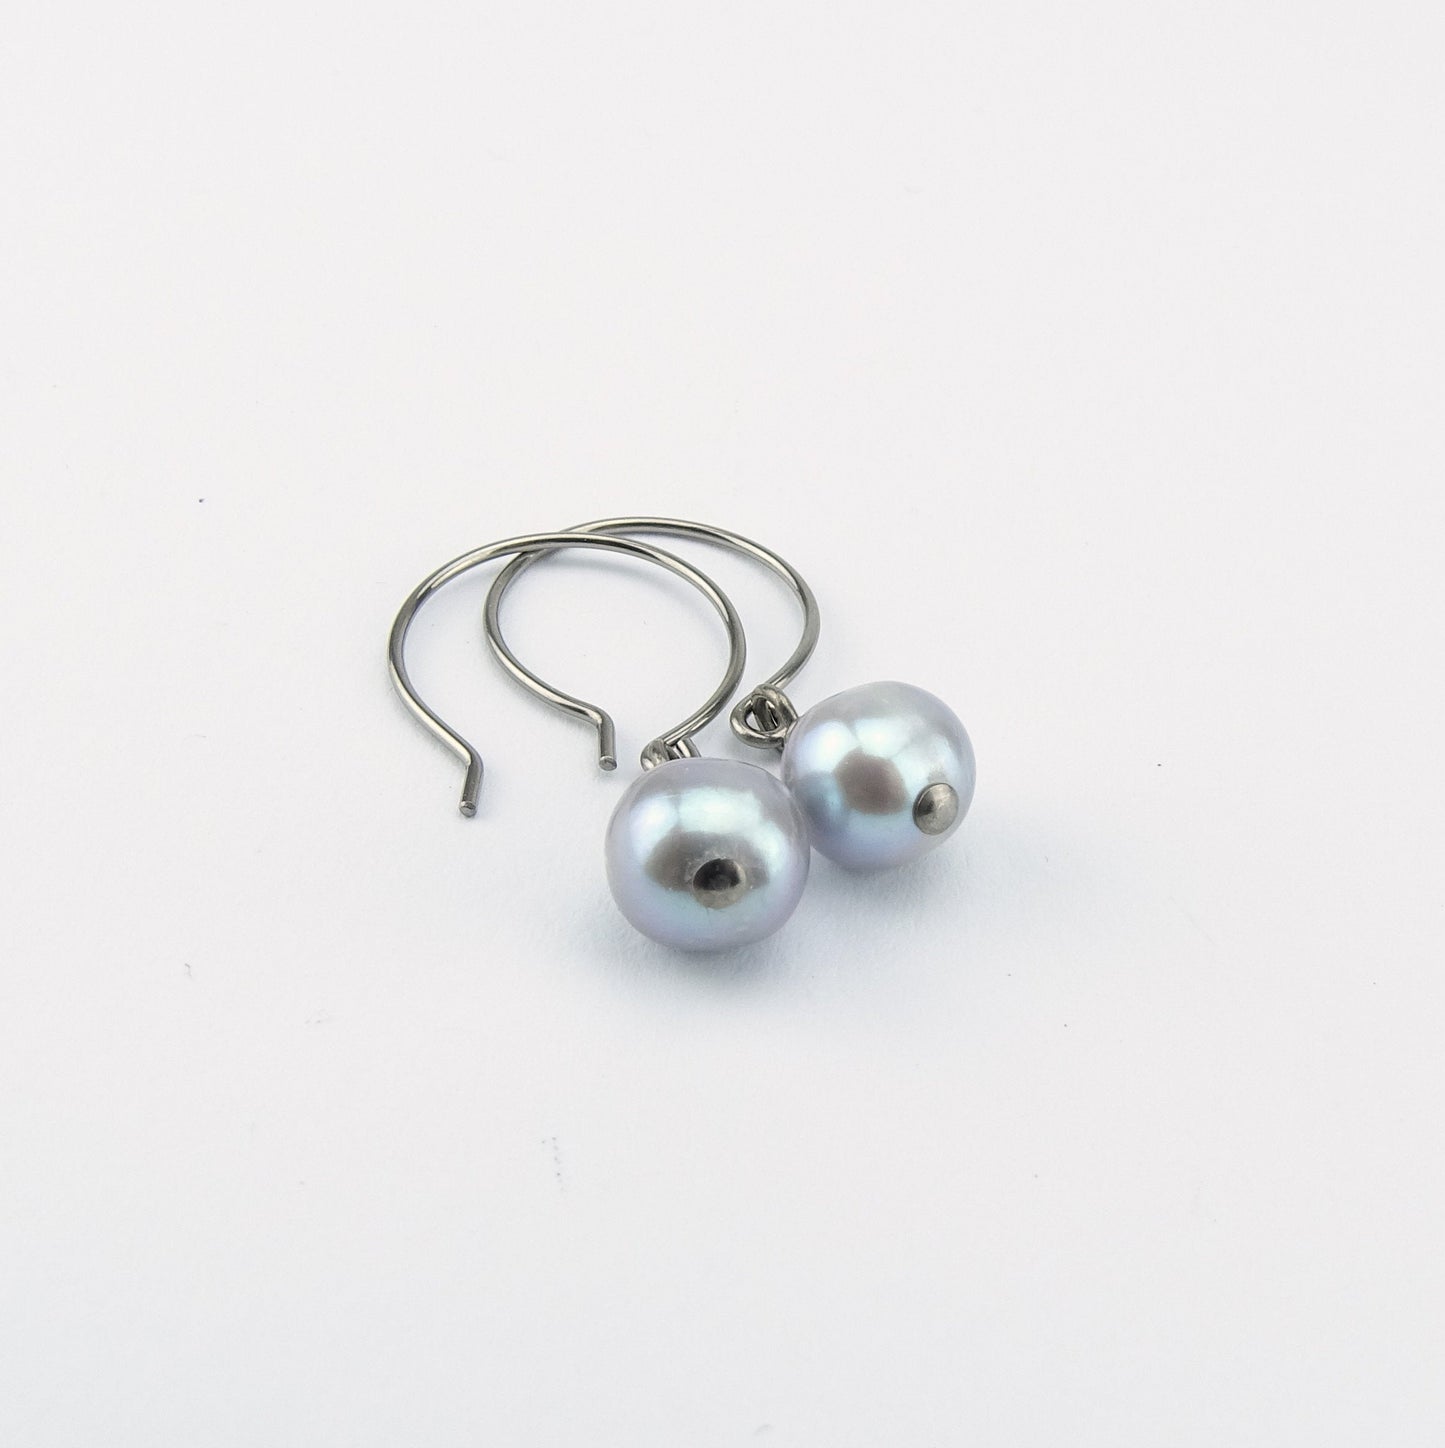 Gray Pearl Earrings, Niobium Earrings, Grey Freshwater Pearls Titanium Earrings, Hypoallergenic Hoop Nickel Free Earrings for Sensitive Ears